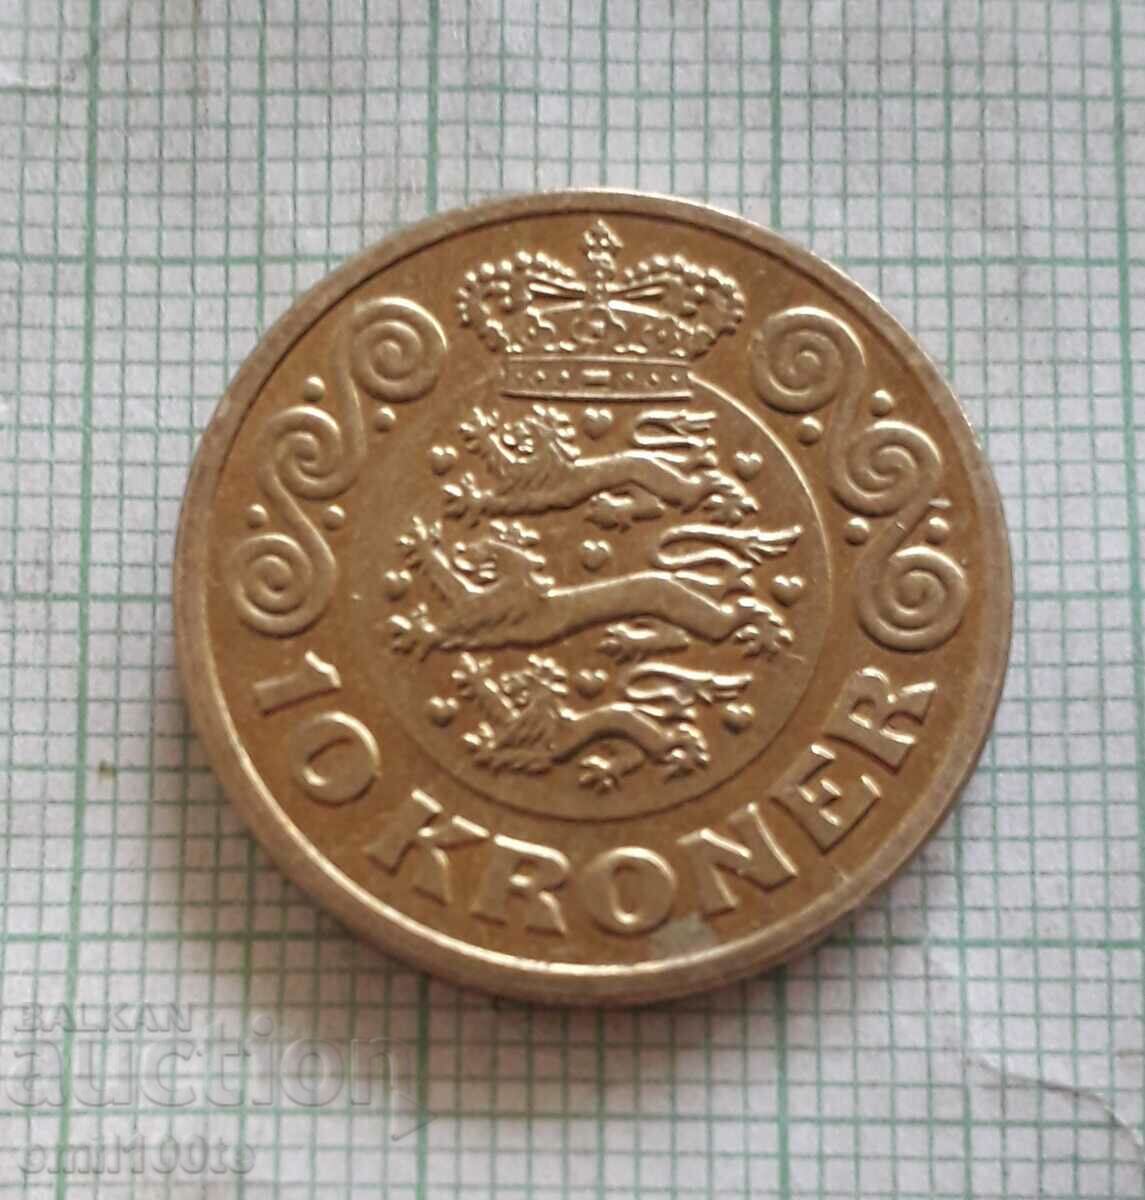 10 kroner 2015 Denmark